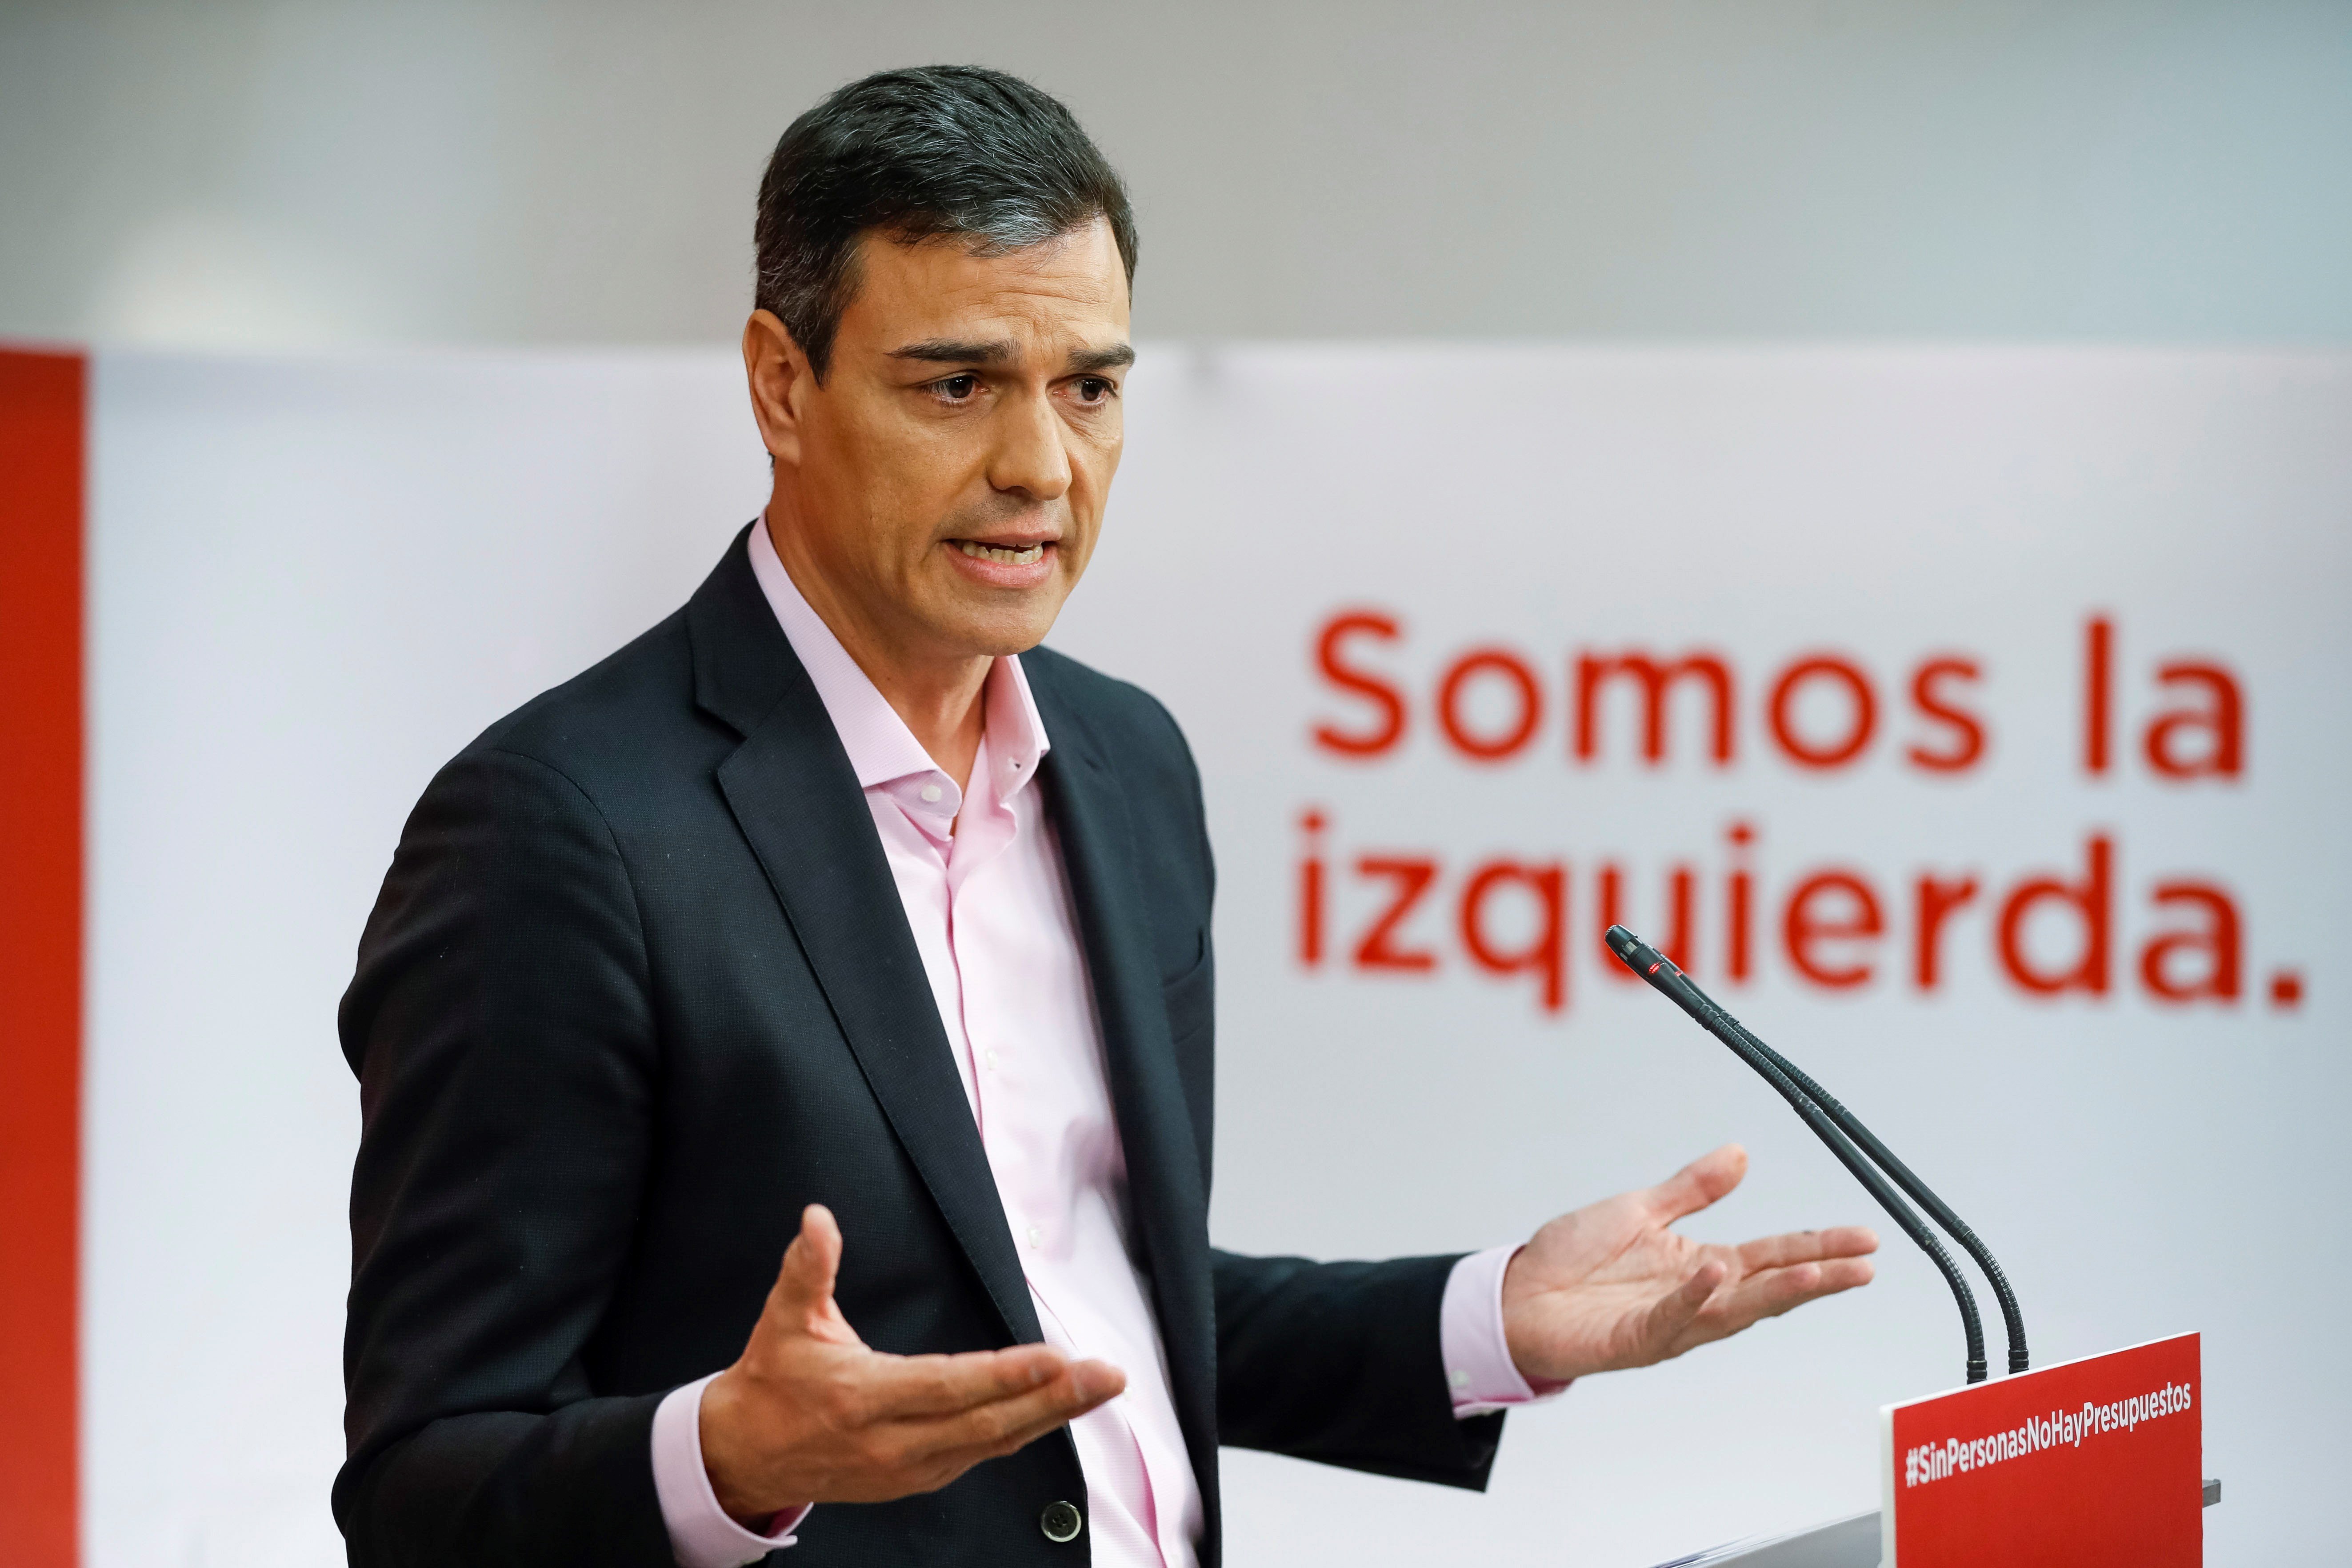 Sánchez rechaza los presupuestos porque buscan un Estado "low cost"